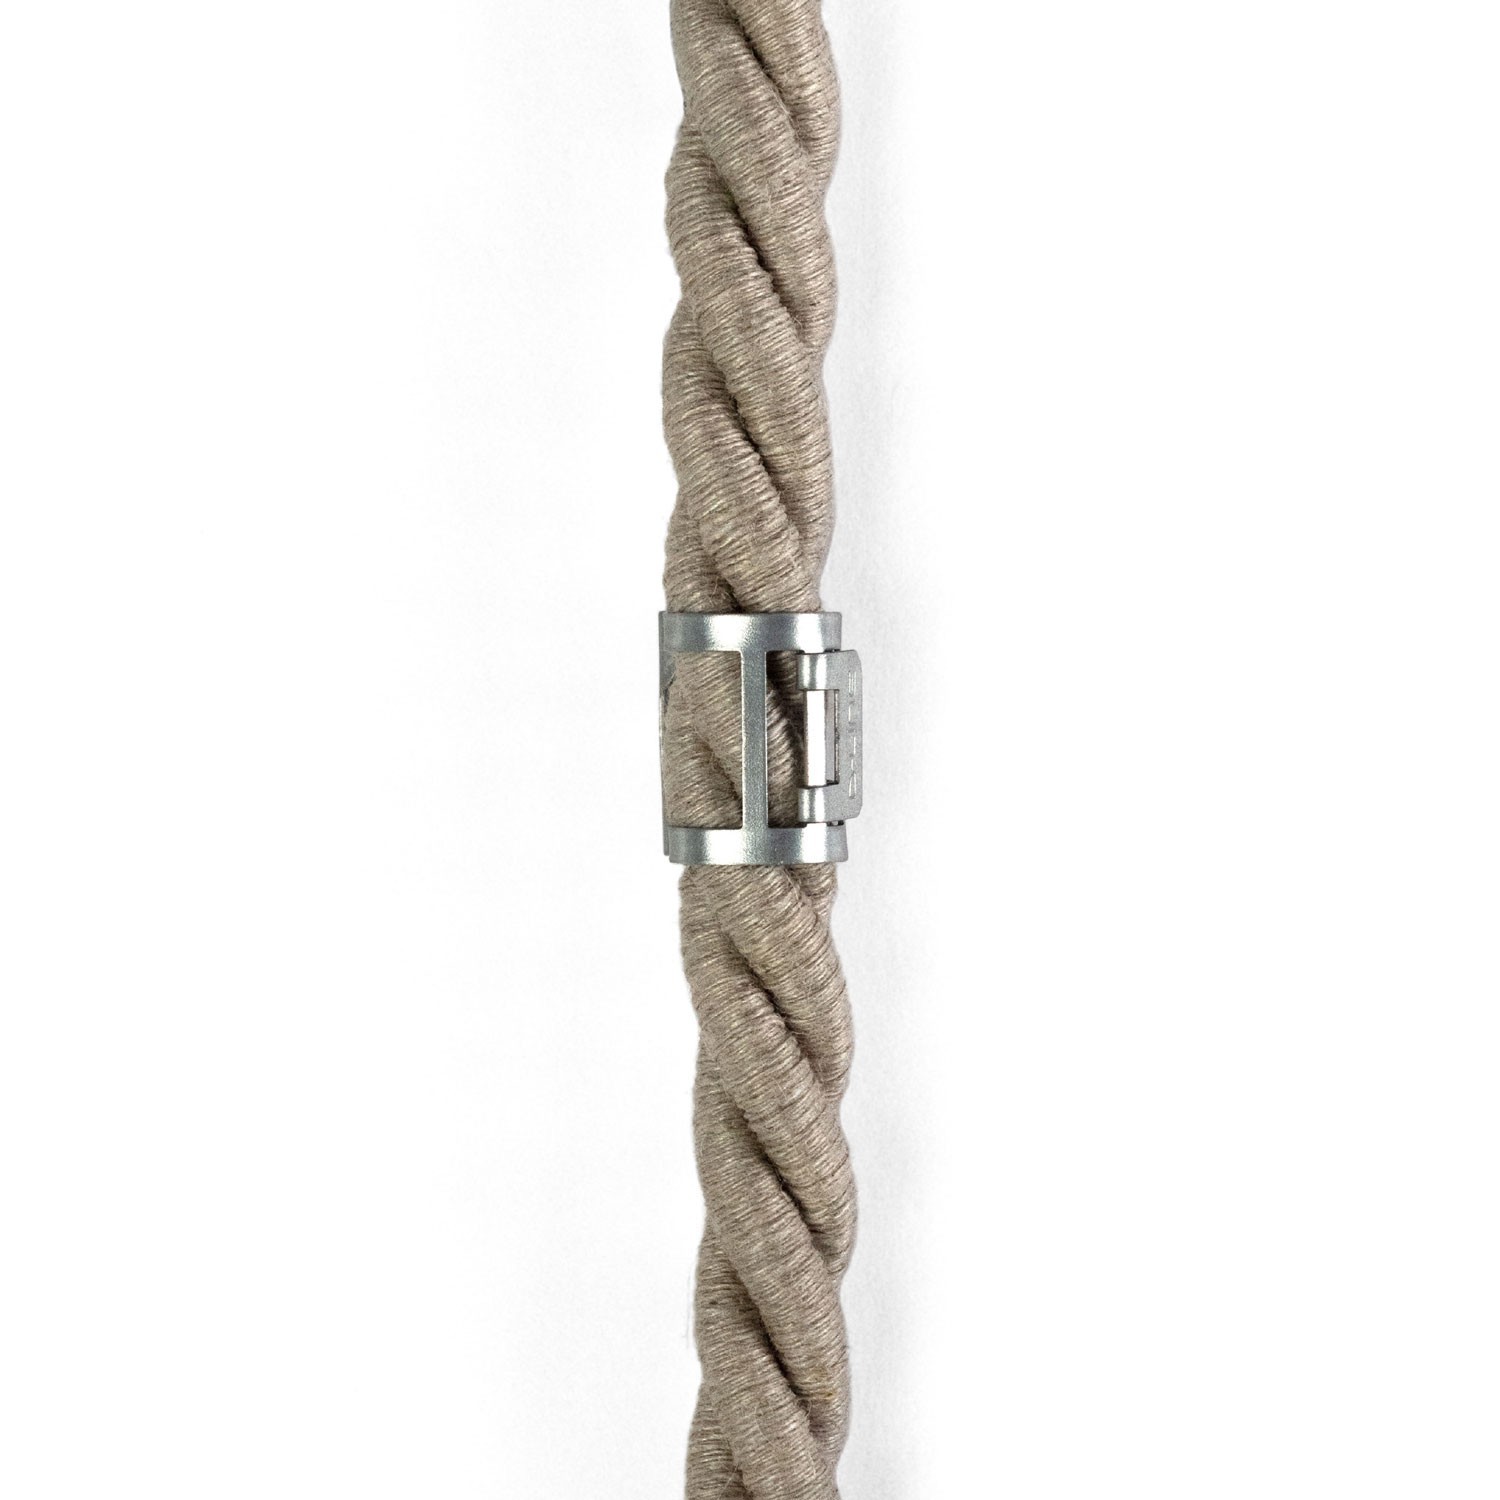 Kabelklämma i metall för repkablar med en diameter på 16 mm